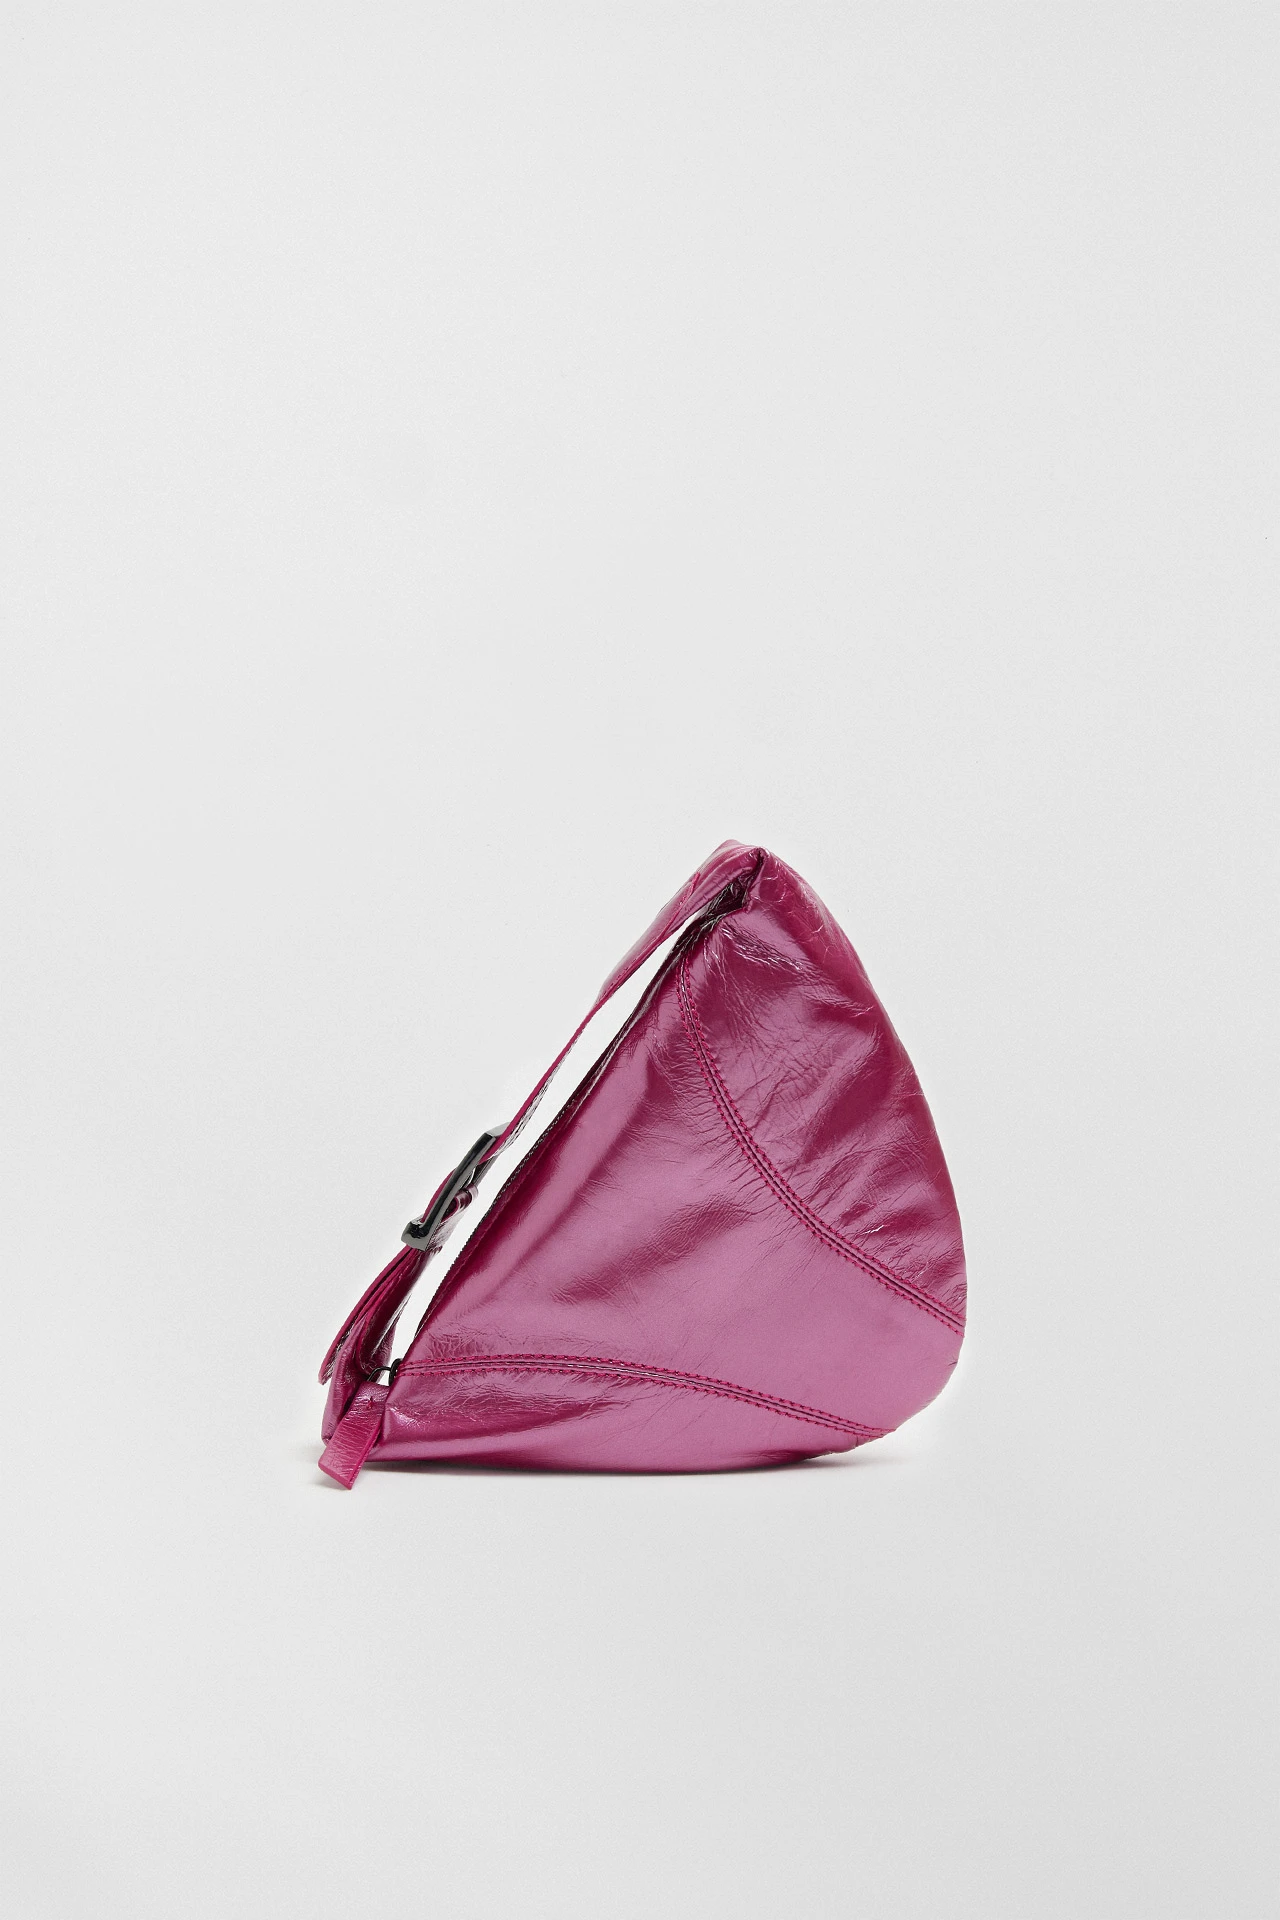 Miista-dagna-pink-bag-01